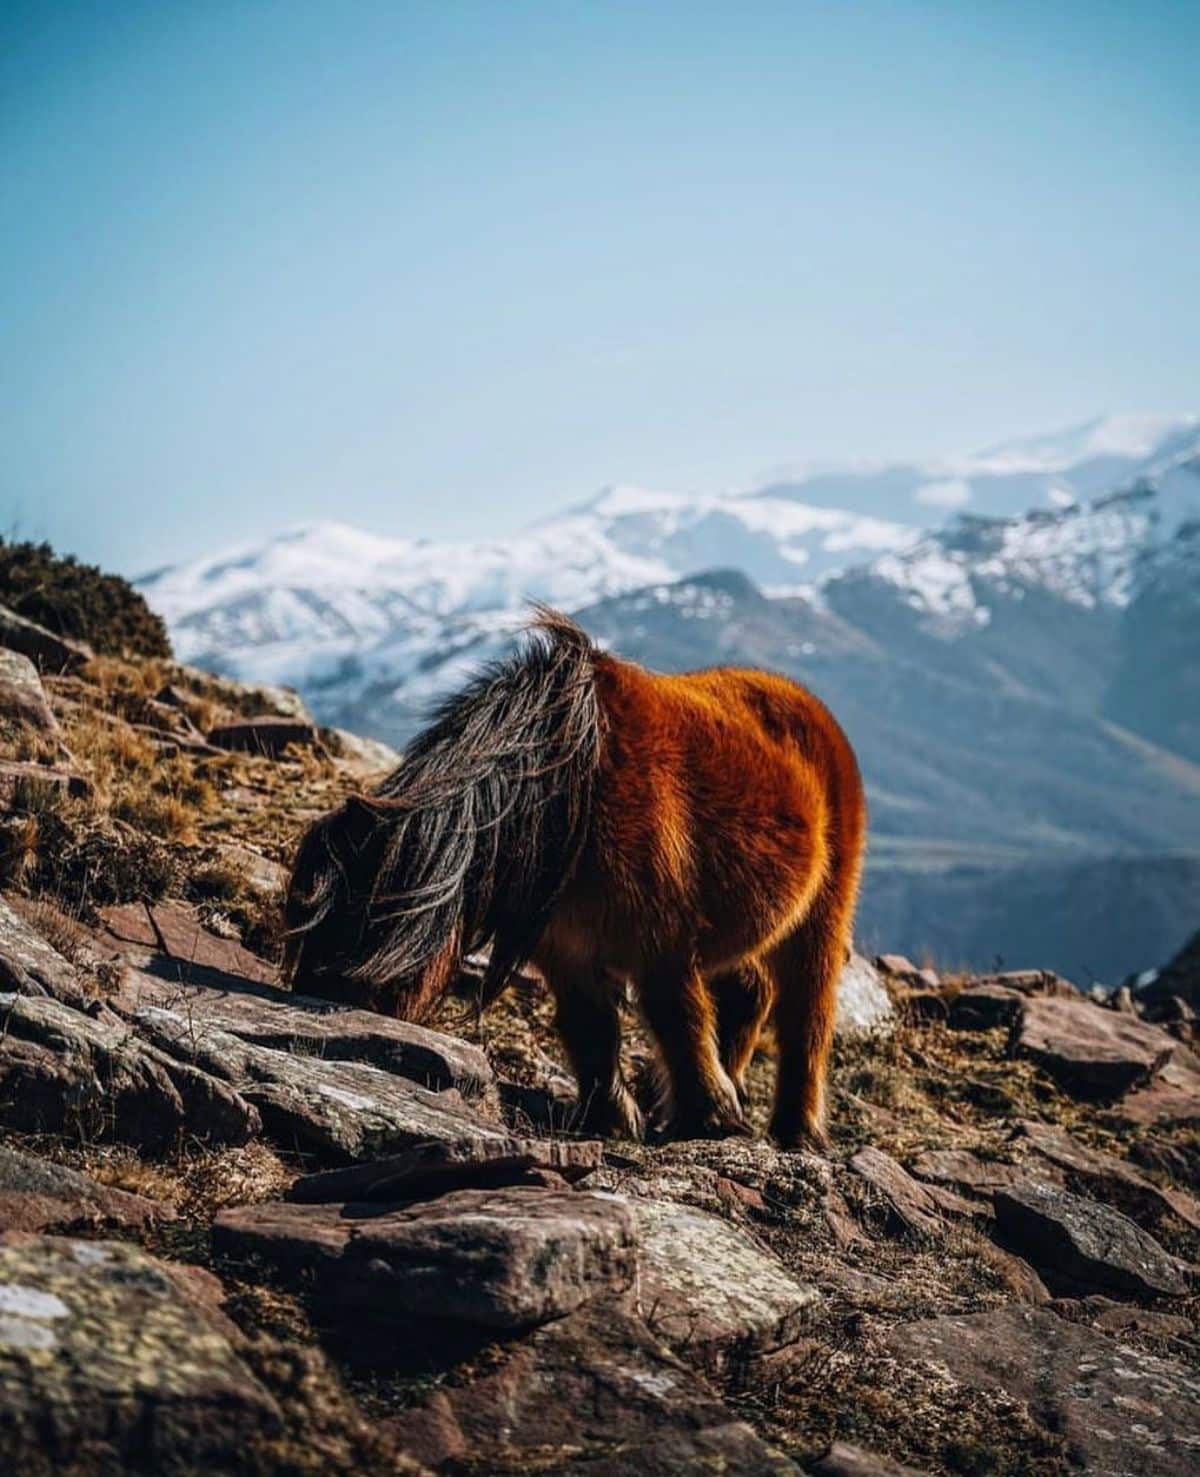 An adorable furry Pottok horse grazes on a mountain.